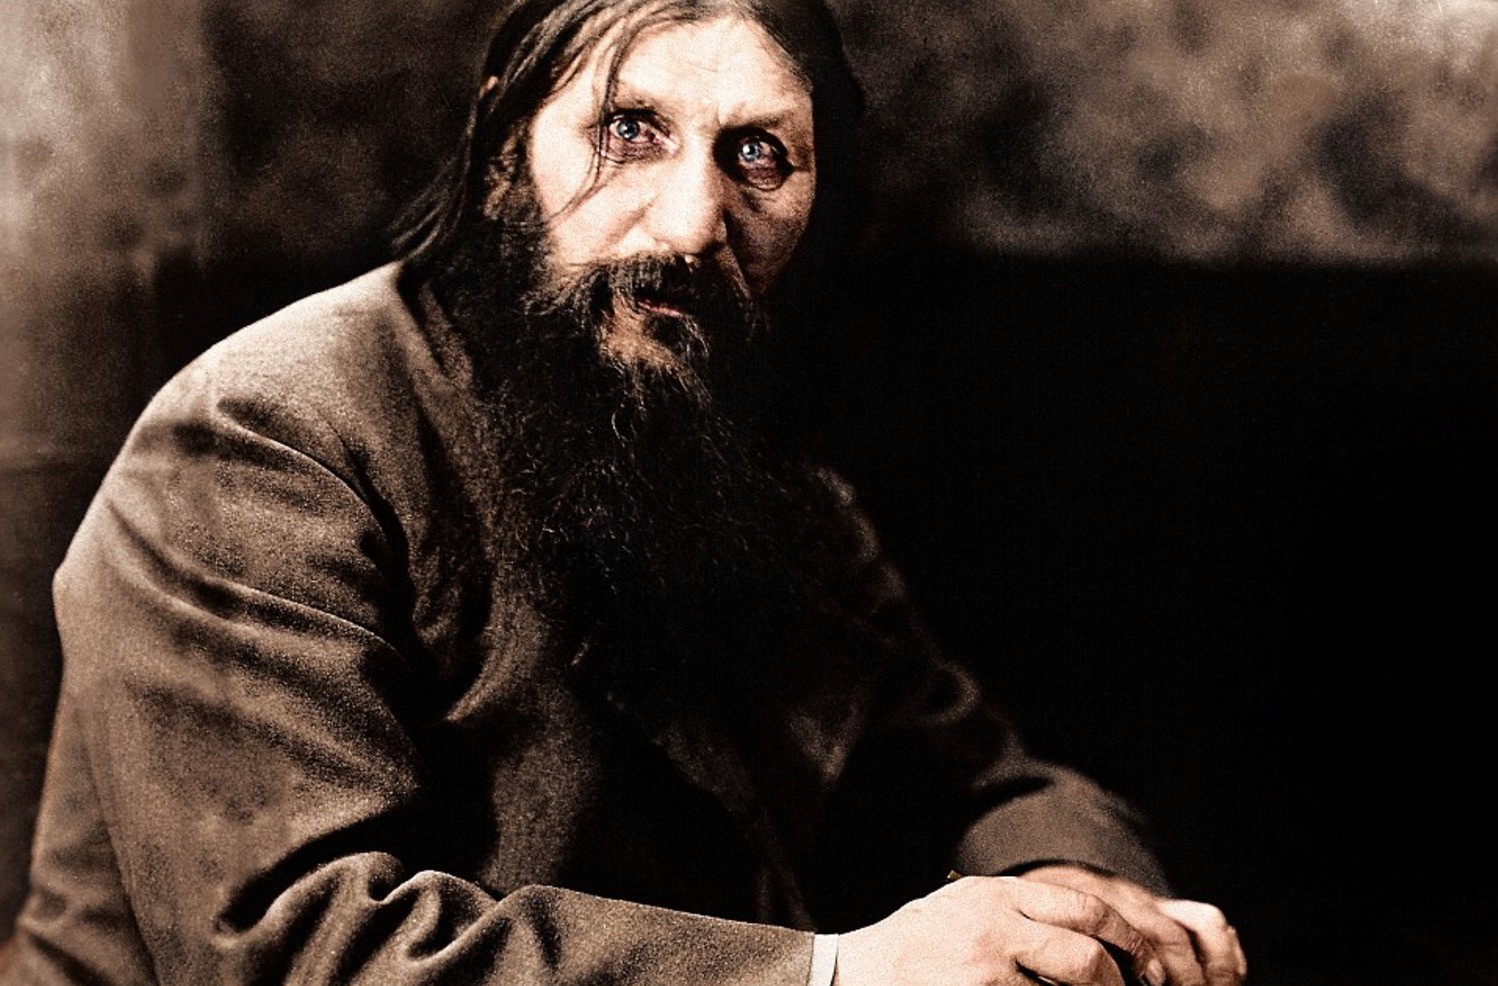 Numele real al lui Rasputin era Grigori Eftimovici